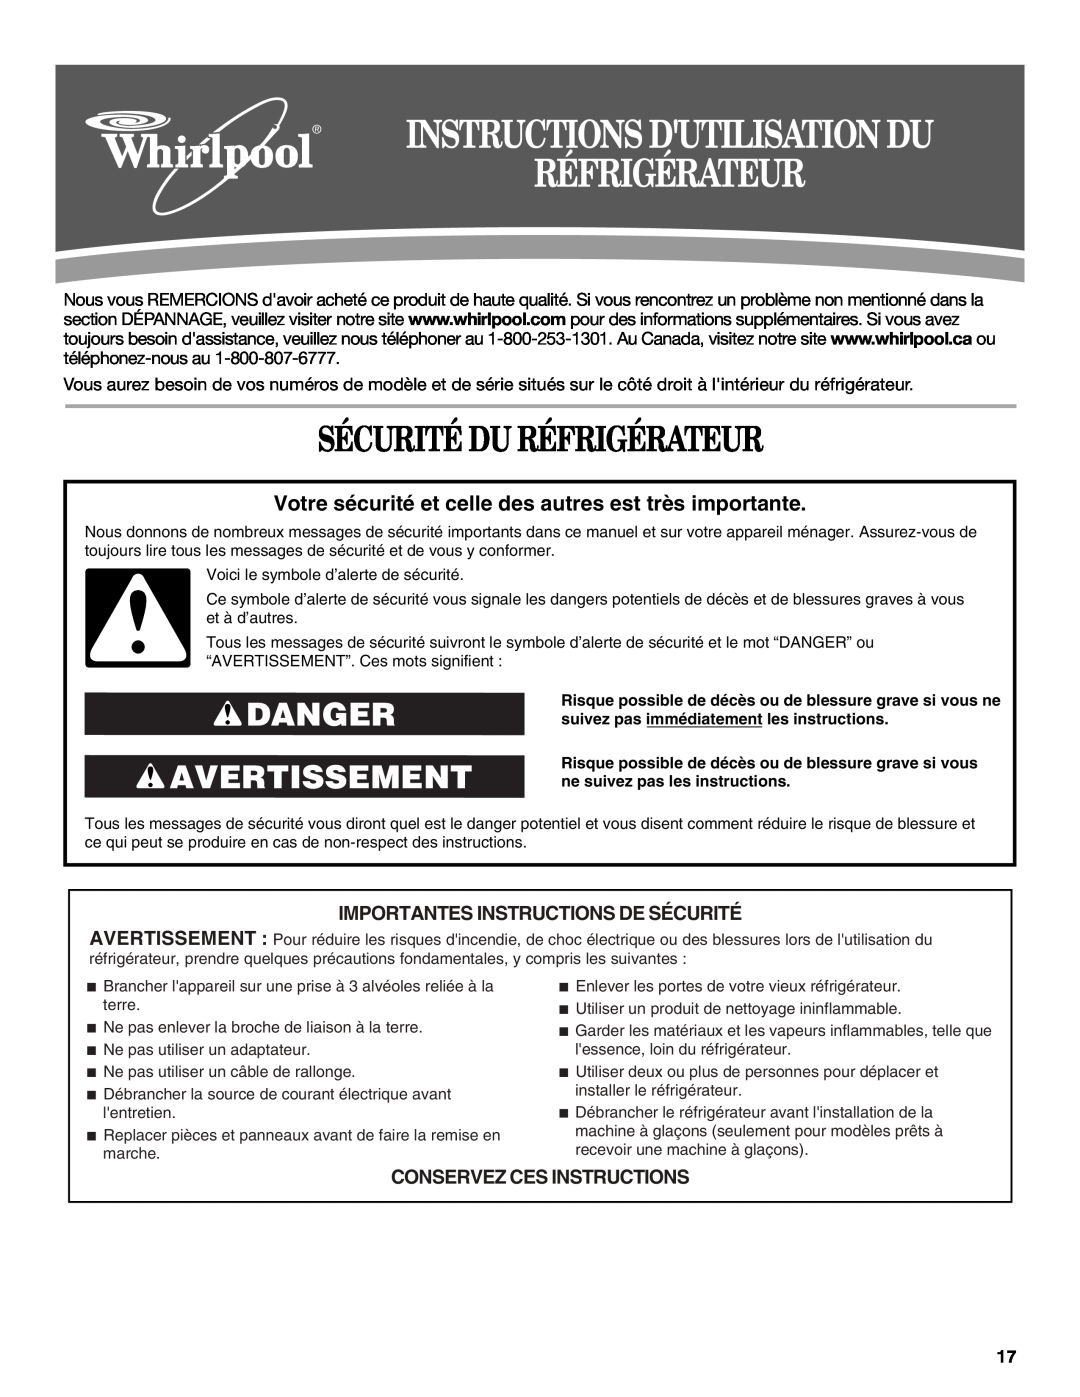 Whirlpool GC3PHEXNQ00, GC3PHEXNB01 Sécurité Du Réfrigérateur, Danger Avertissement, Importantes Instructions De Sécurité 